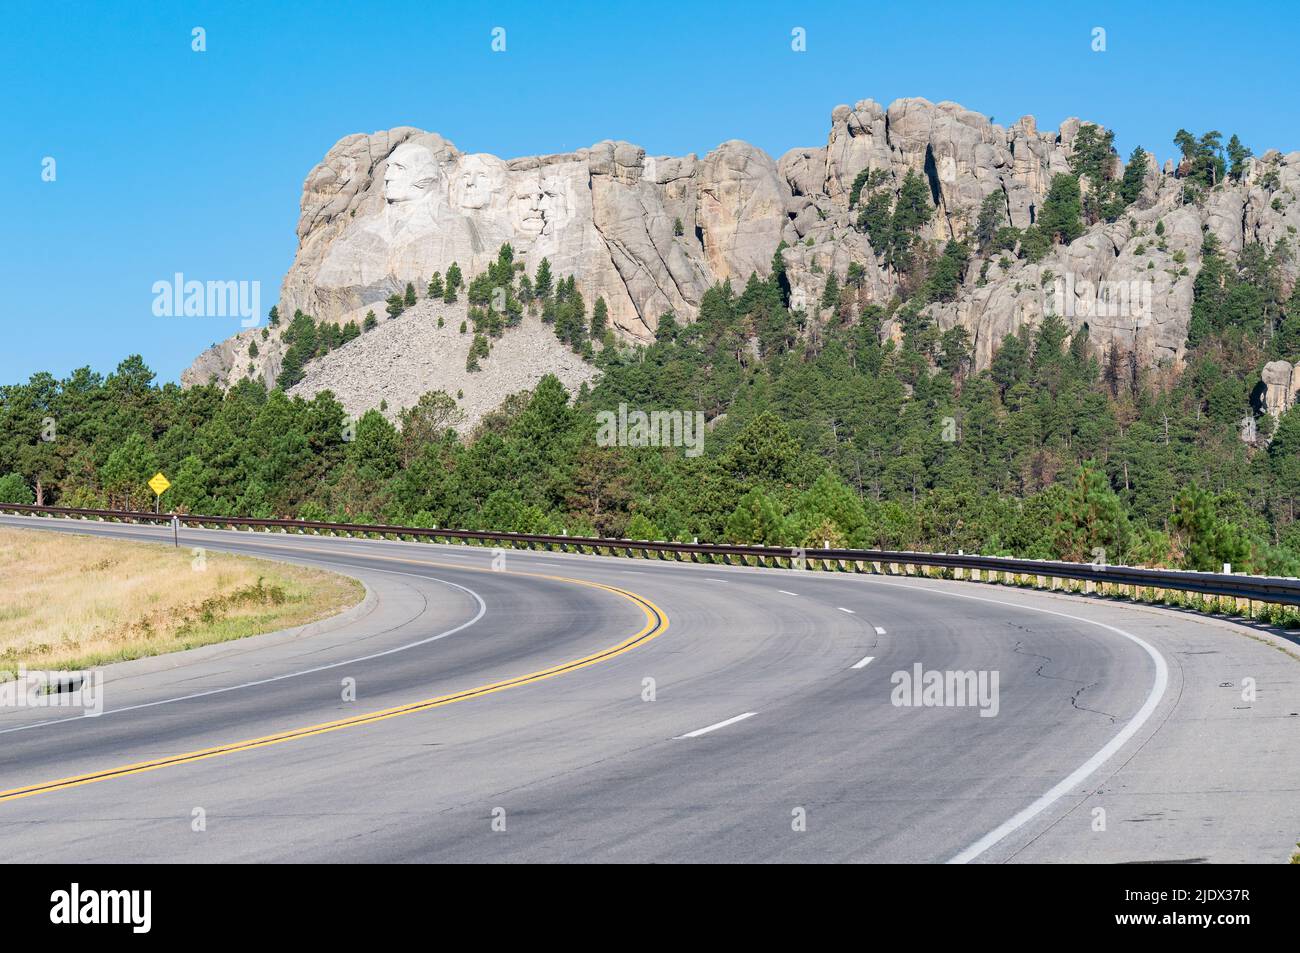 Keystone, SD - 29. August 2020: Mount Rushmore von der Autobahn aus gesehen, die sich dem Mount Rushmore National Park nähert Stockfoto